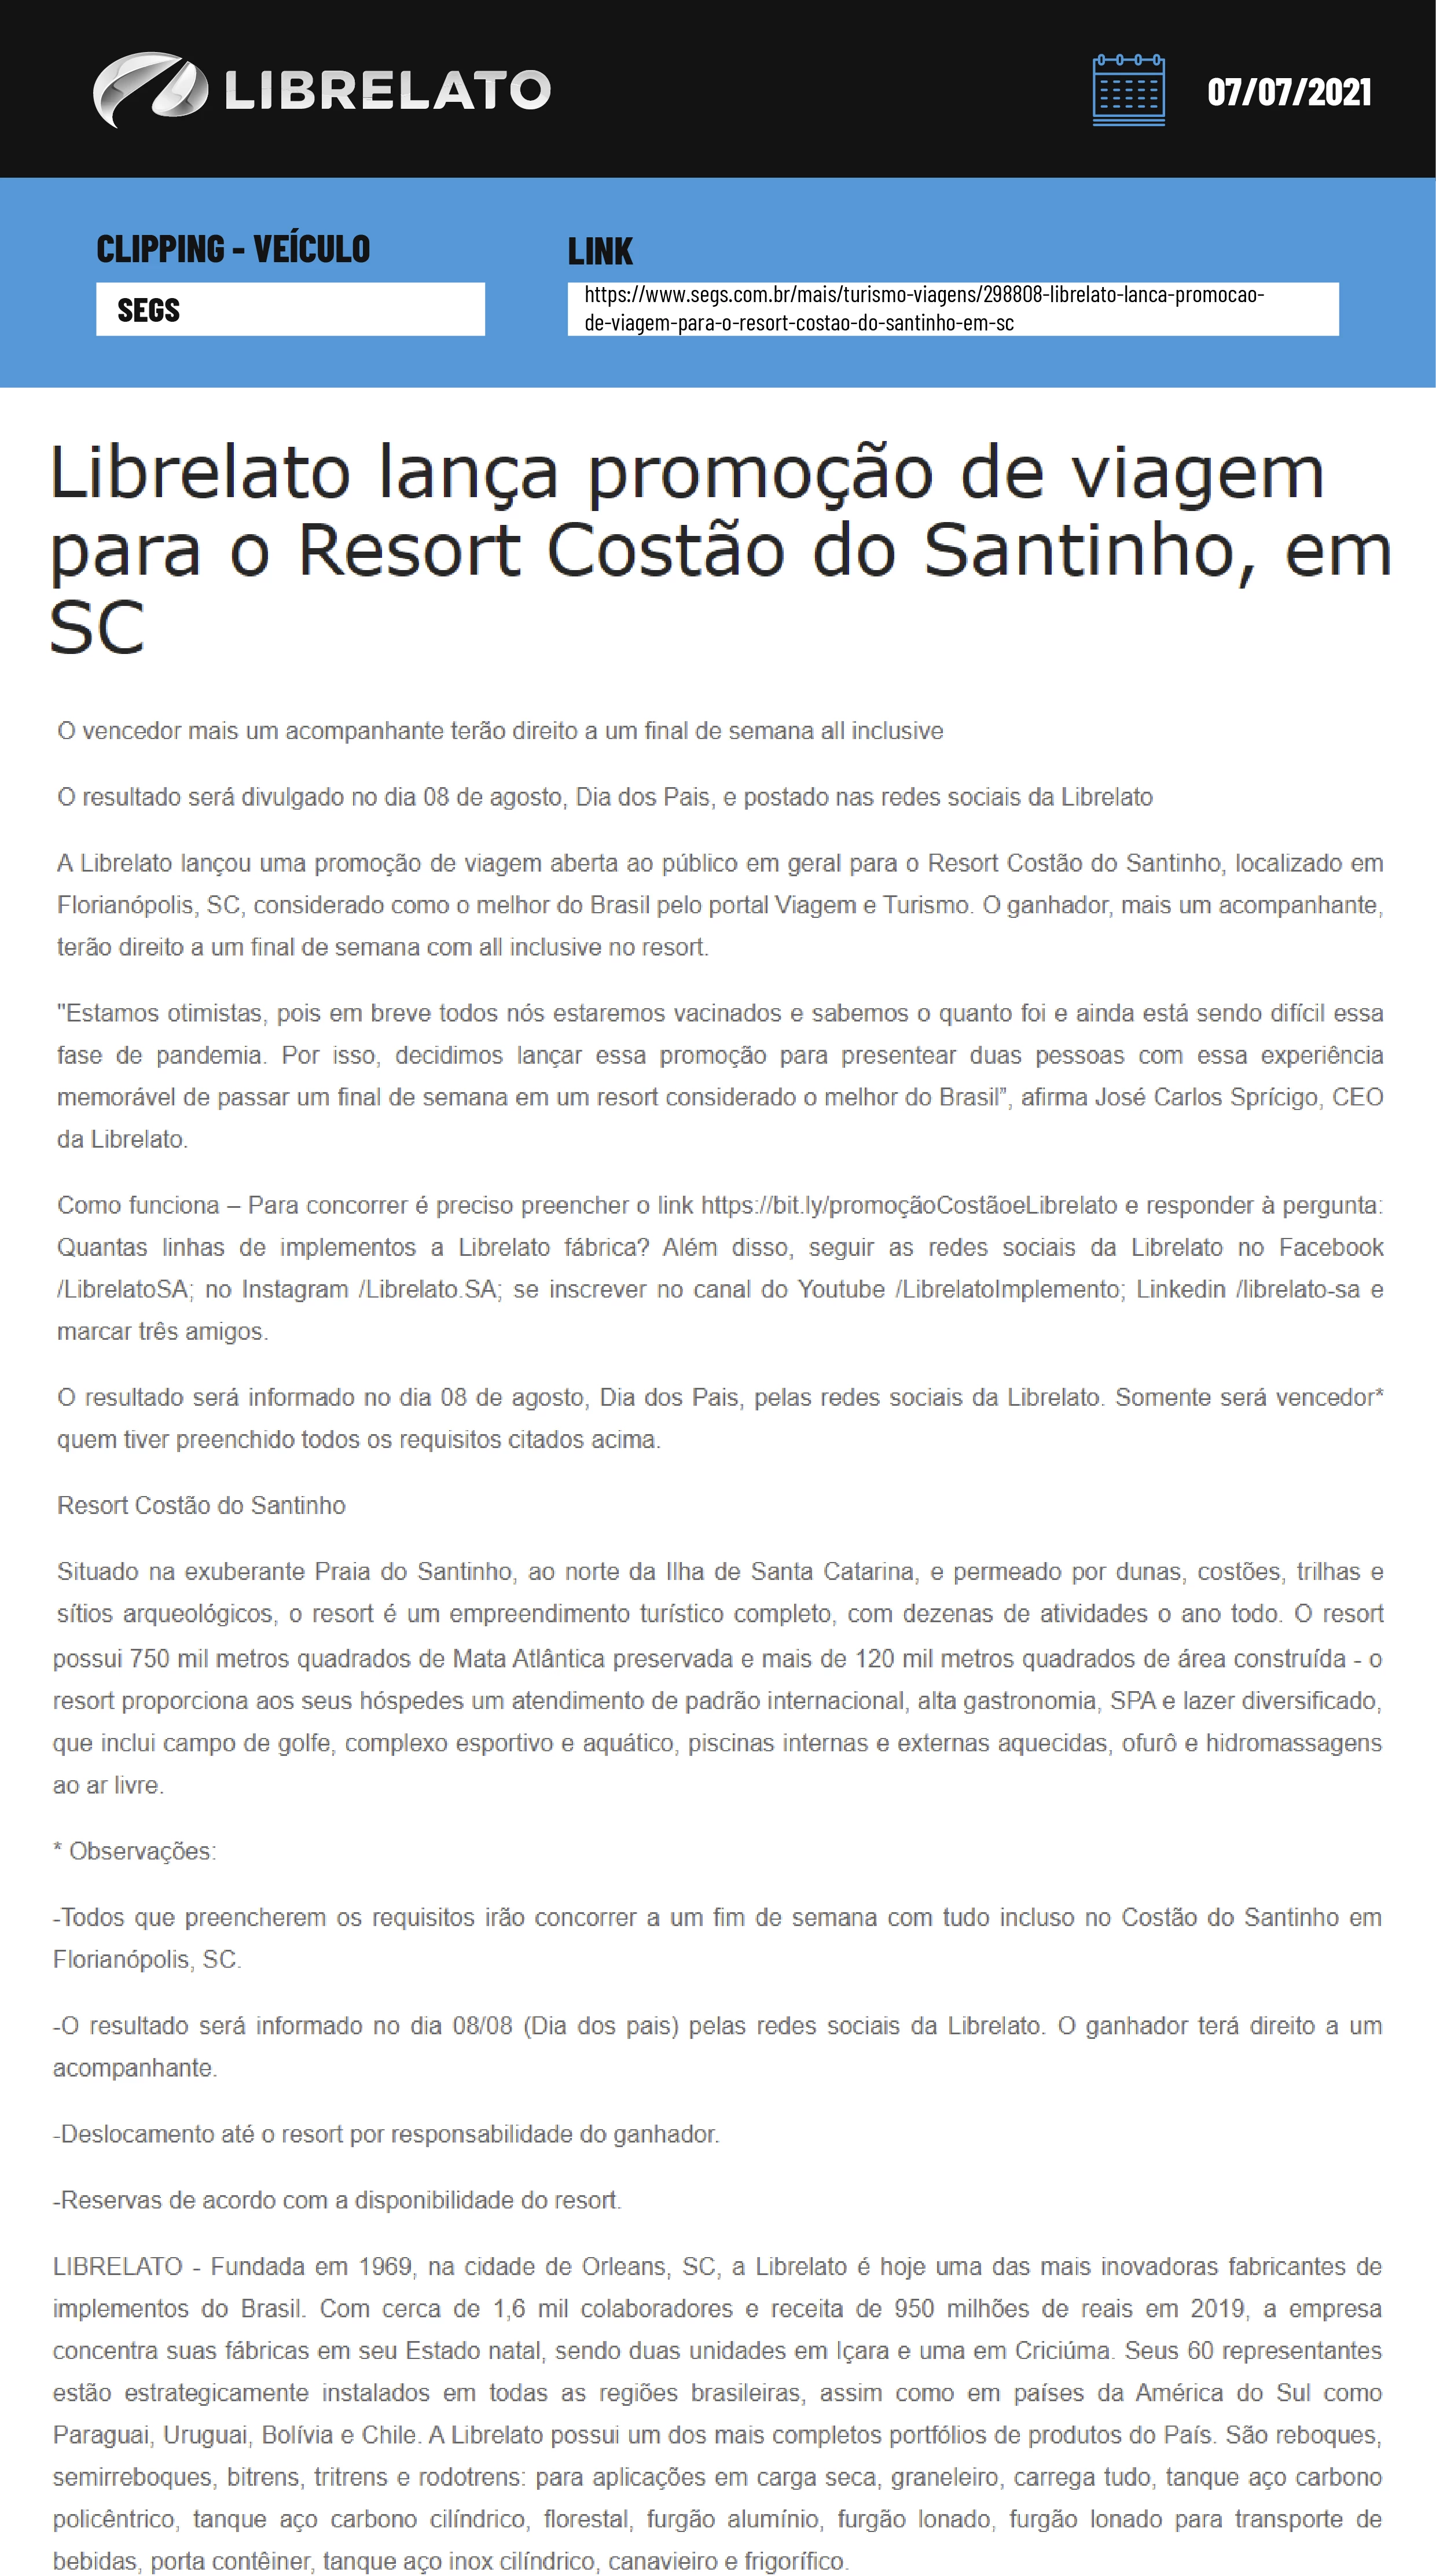 Librelato lança promoção de viagem para o Resort Costão do Santinho, em SC